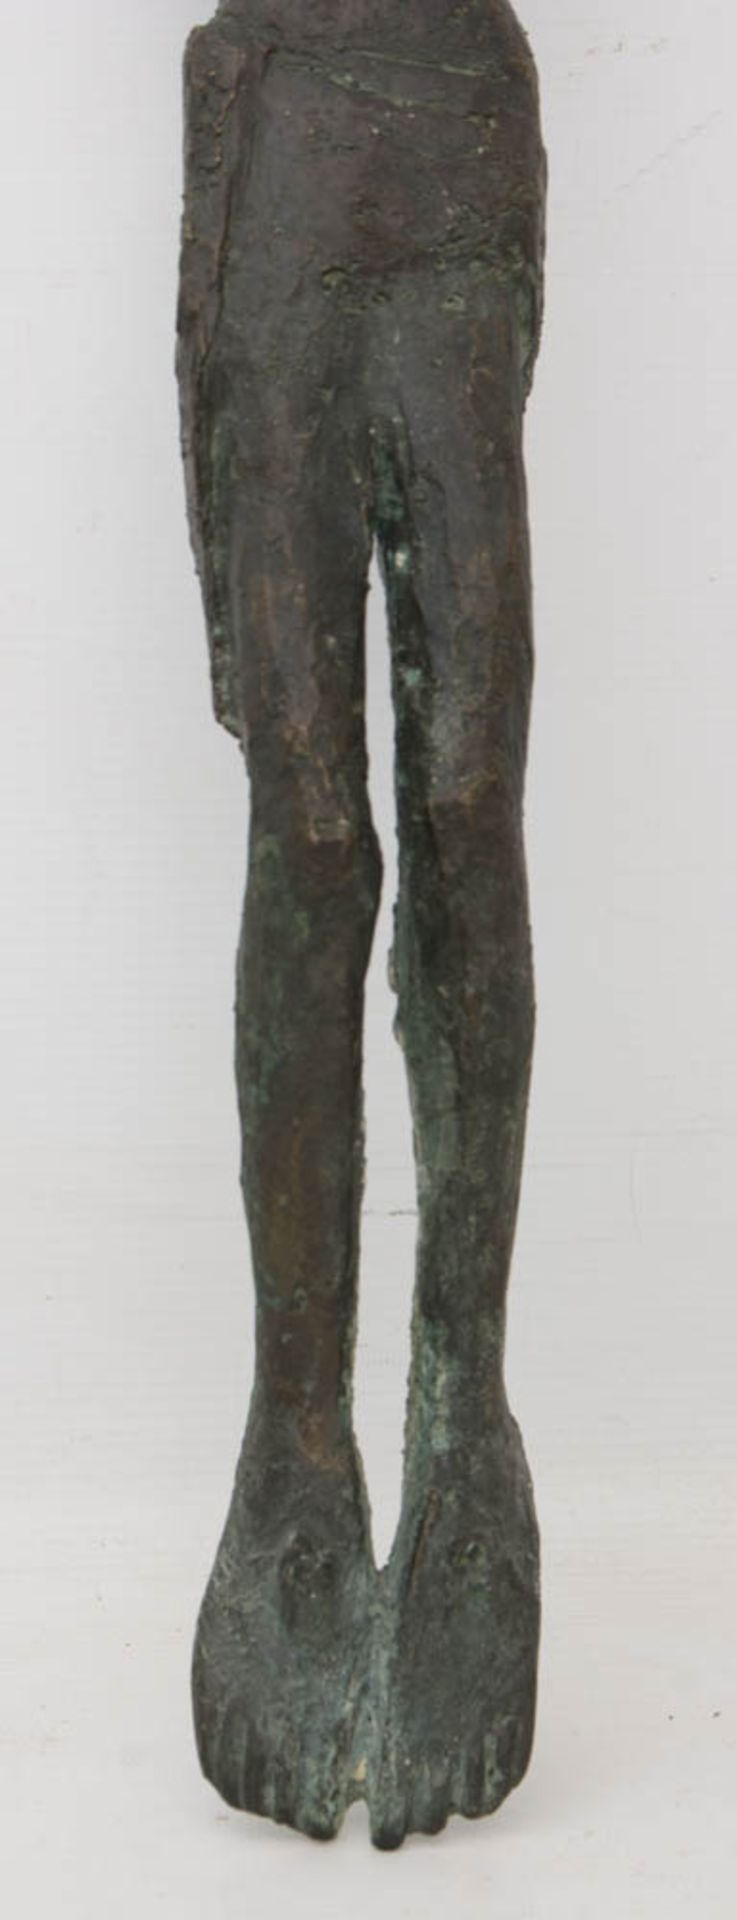 UNBEKANNTER KÜNSTLER, Christus ohne Kreuz, Bronzeguss, 20 Jh.Starke Patina, guter Zustand.69 cm L. - Bild 4 aus 5